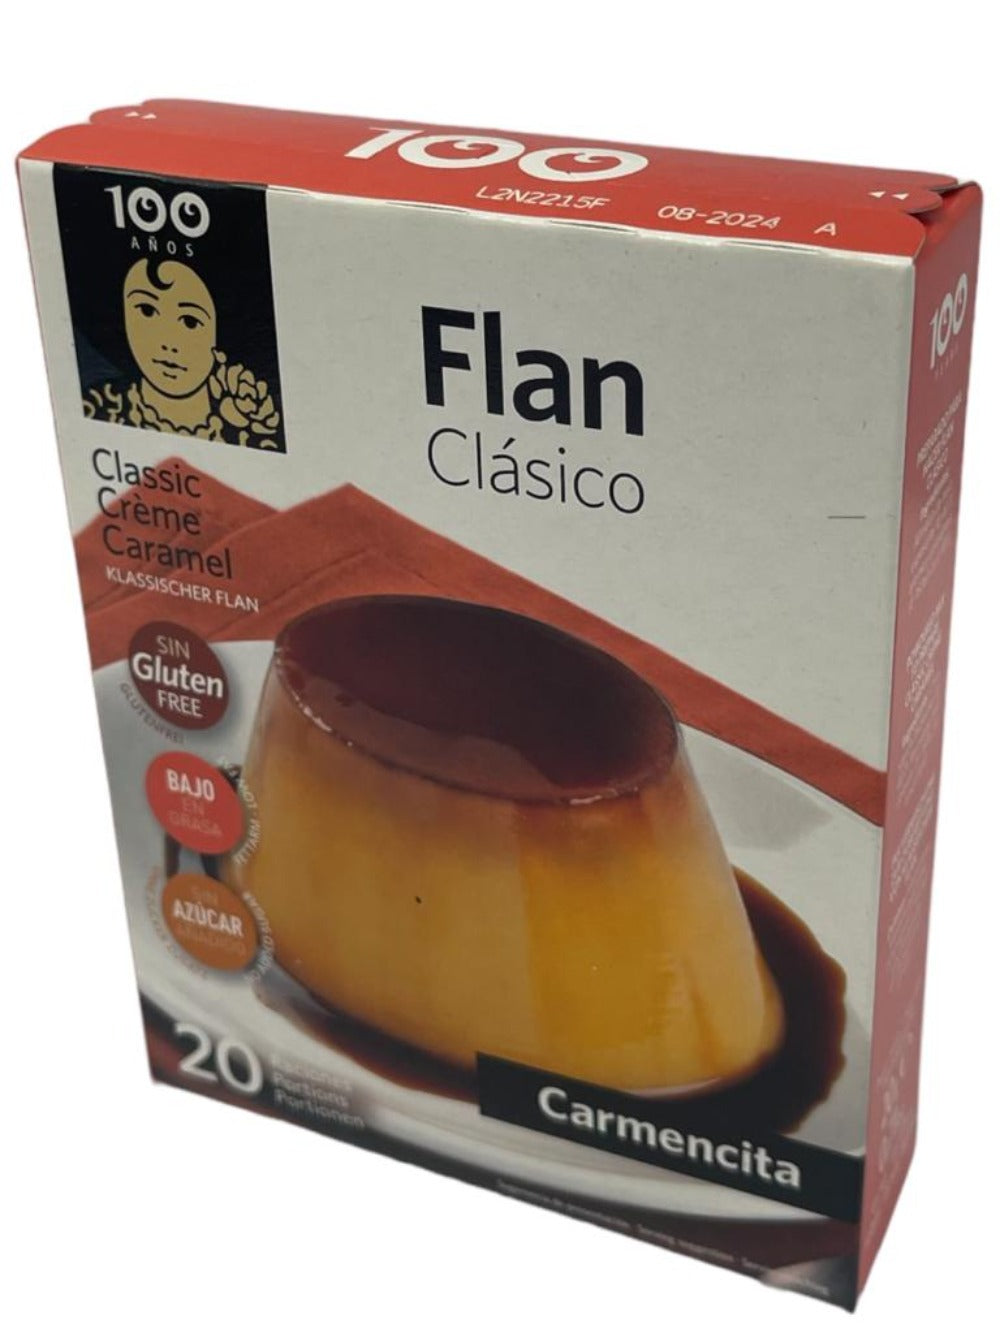 Carmencita Flan Pudding Custard Mix 20g